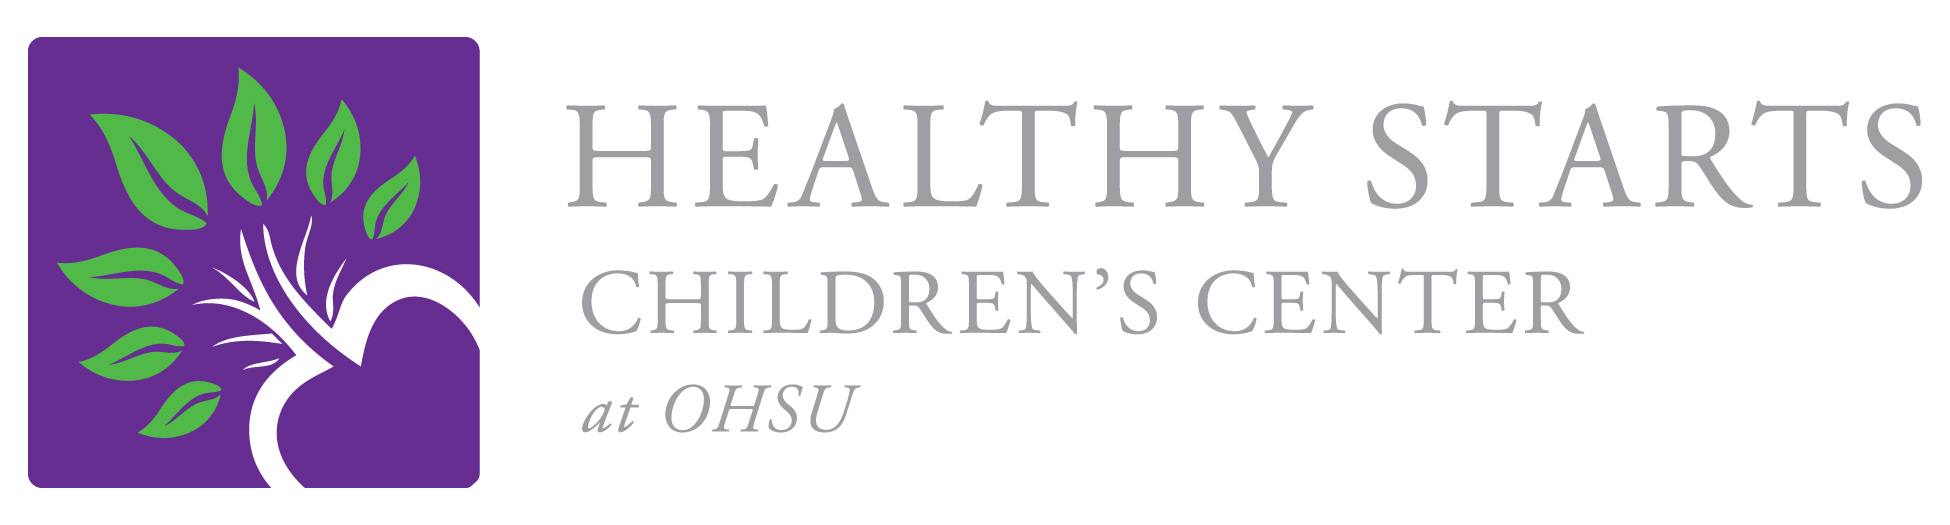 Healthy Starts Children's Center | 971-230-2342